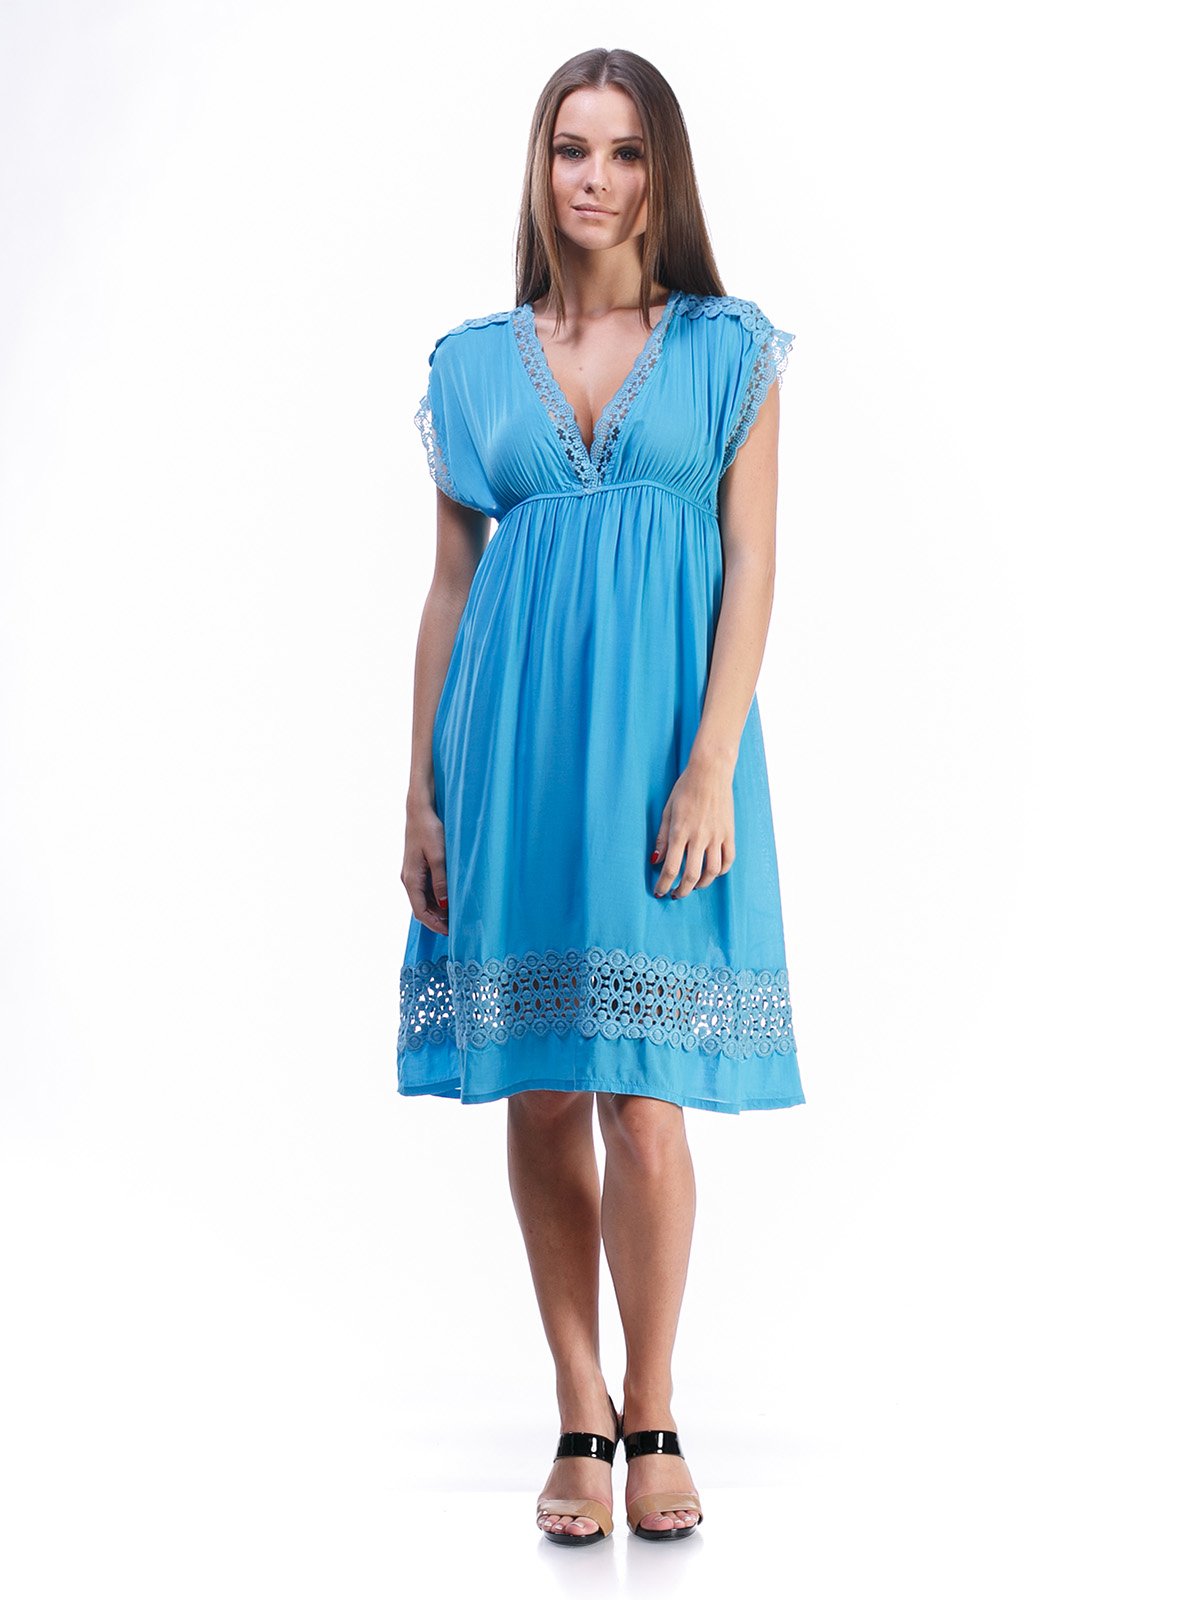 Платье голубое с кружевной отделкой и завязкой | 492894